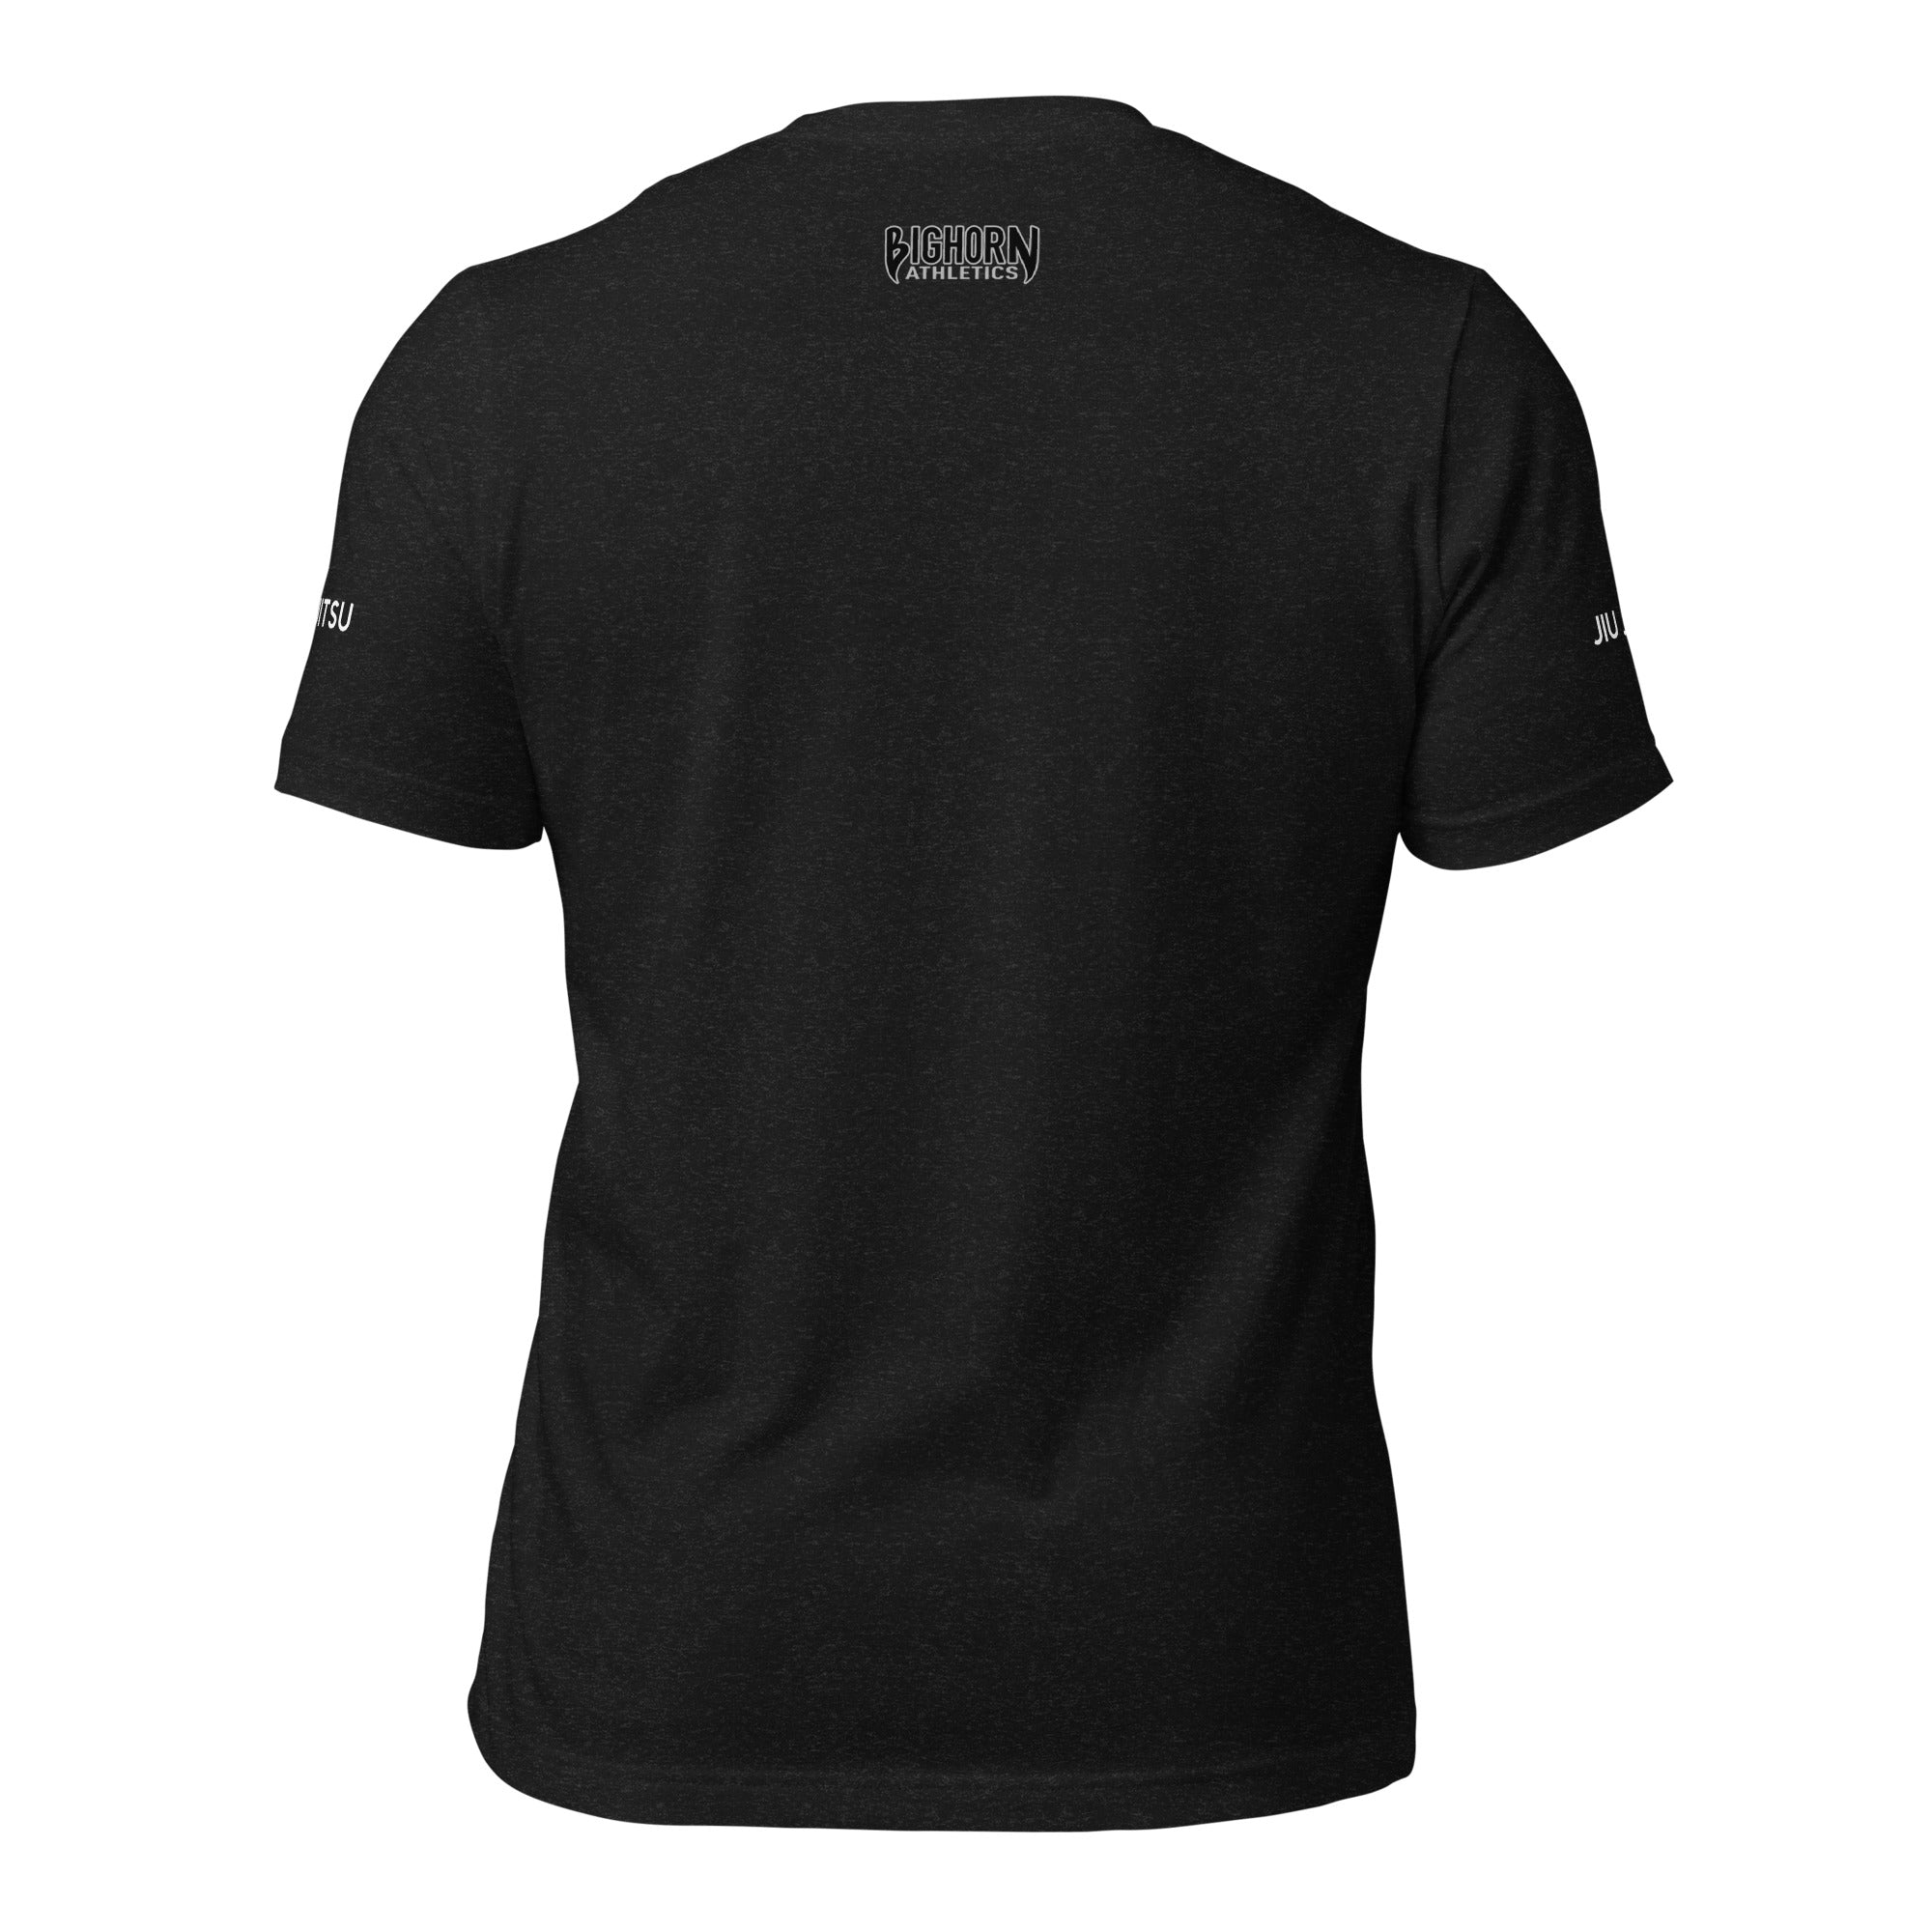 Jiu Jitsu Journal Short Sleeve T-shirt